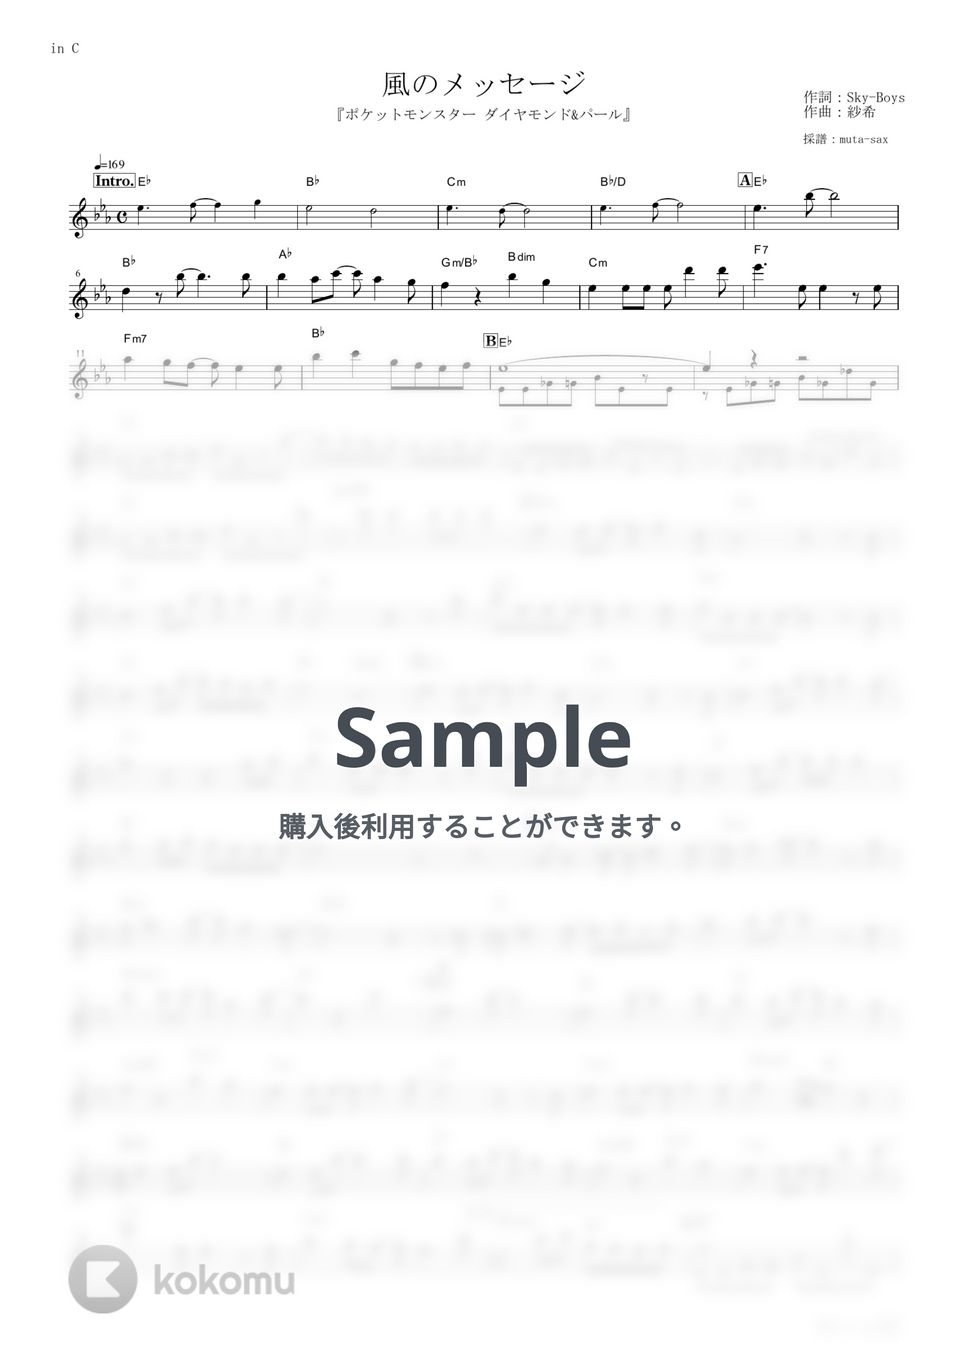 水橋舞 - 風のメッセージ (『ポケットモンスター ダイヤモンド&パール』 / in C) by muta-sax